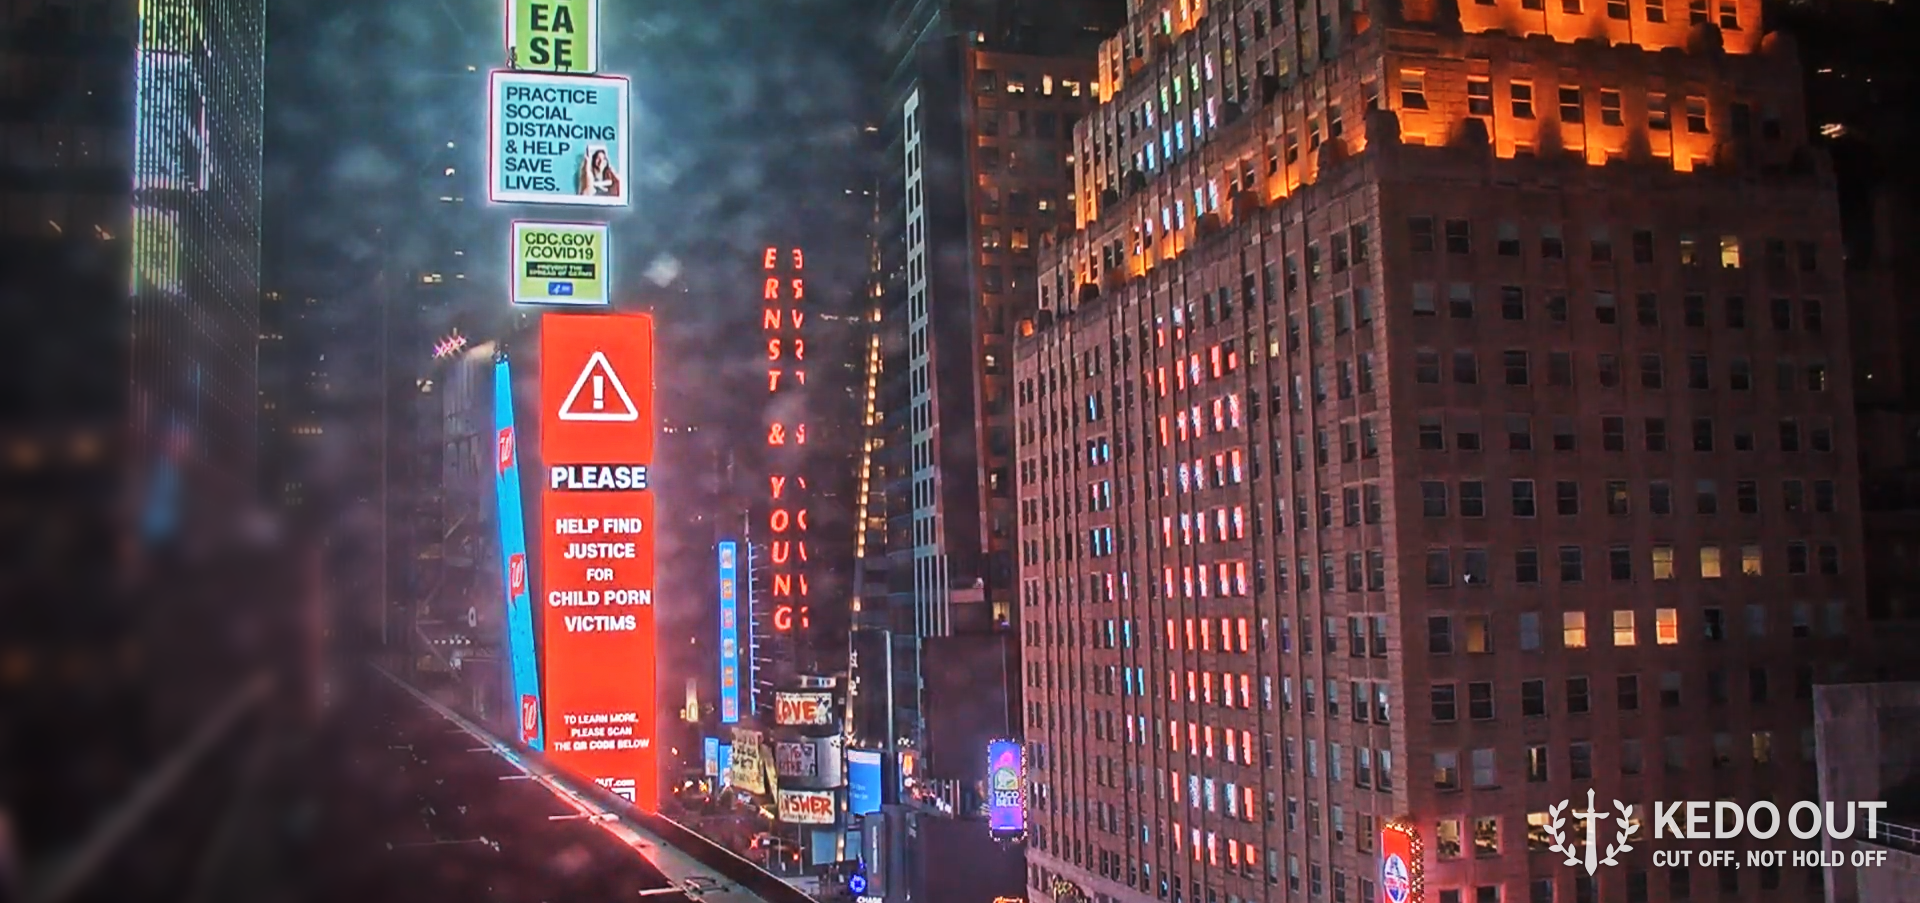 31일(현지시간) 미국 뉴욕 타임스퀘어 전광판에 걸린 세계 최대 아동 성착취물 사이트 ‘W2V’ 솜방망이 처벌 비판 광고. 케도아웃 제공